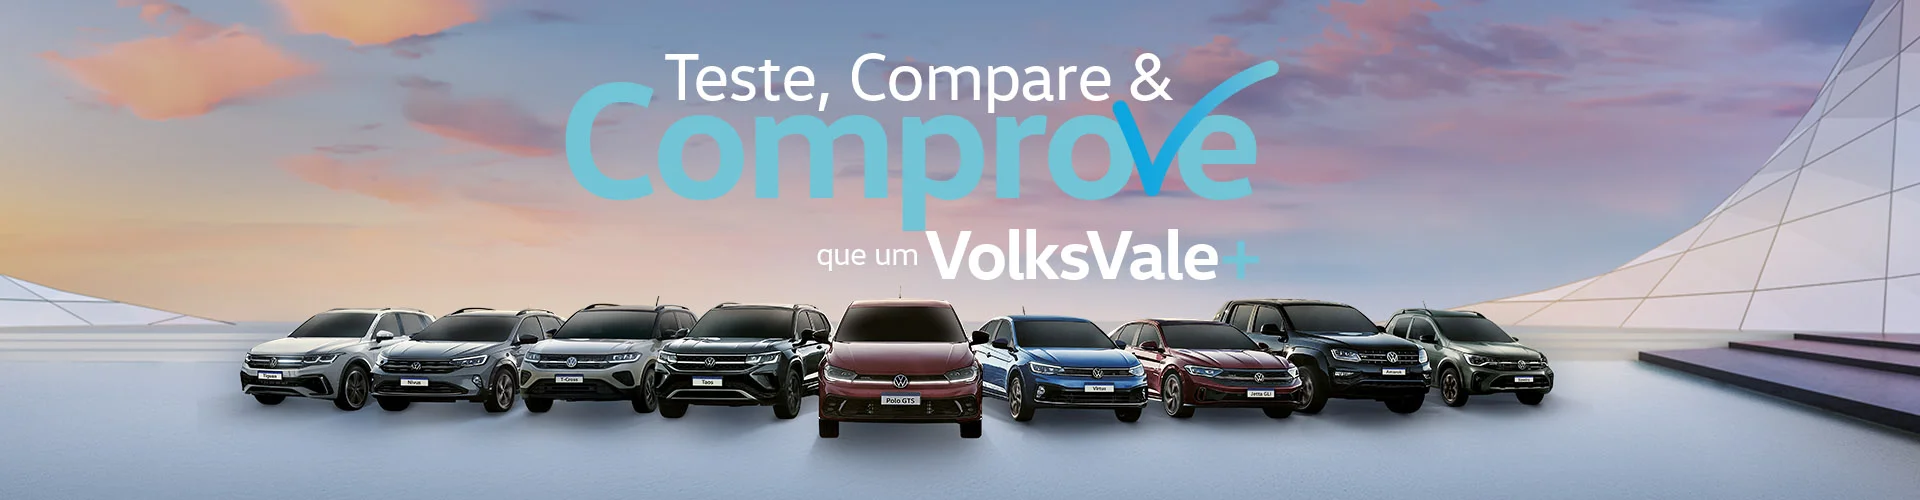 Teste, compare e comprove que um Volks Vale+